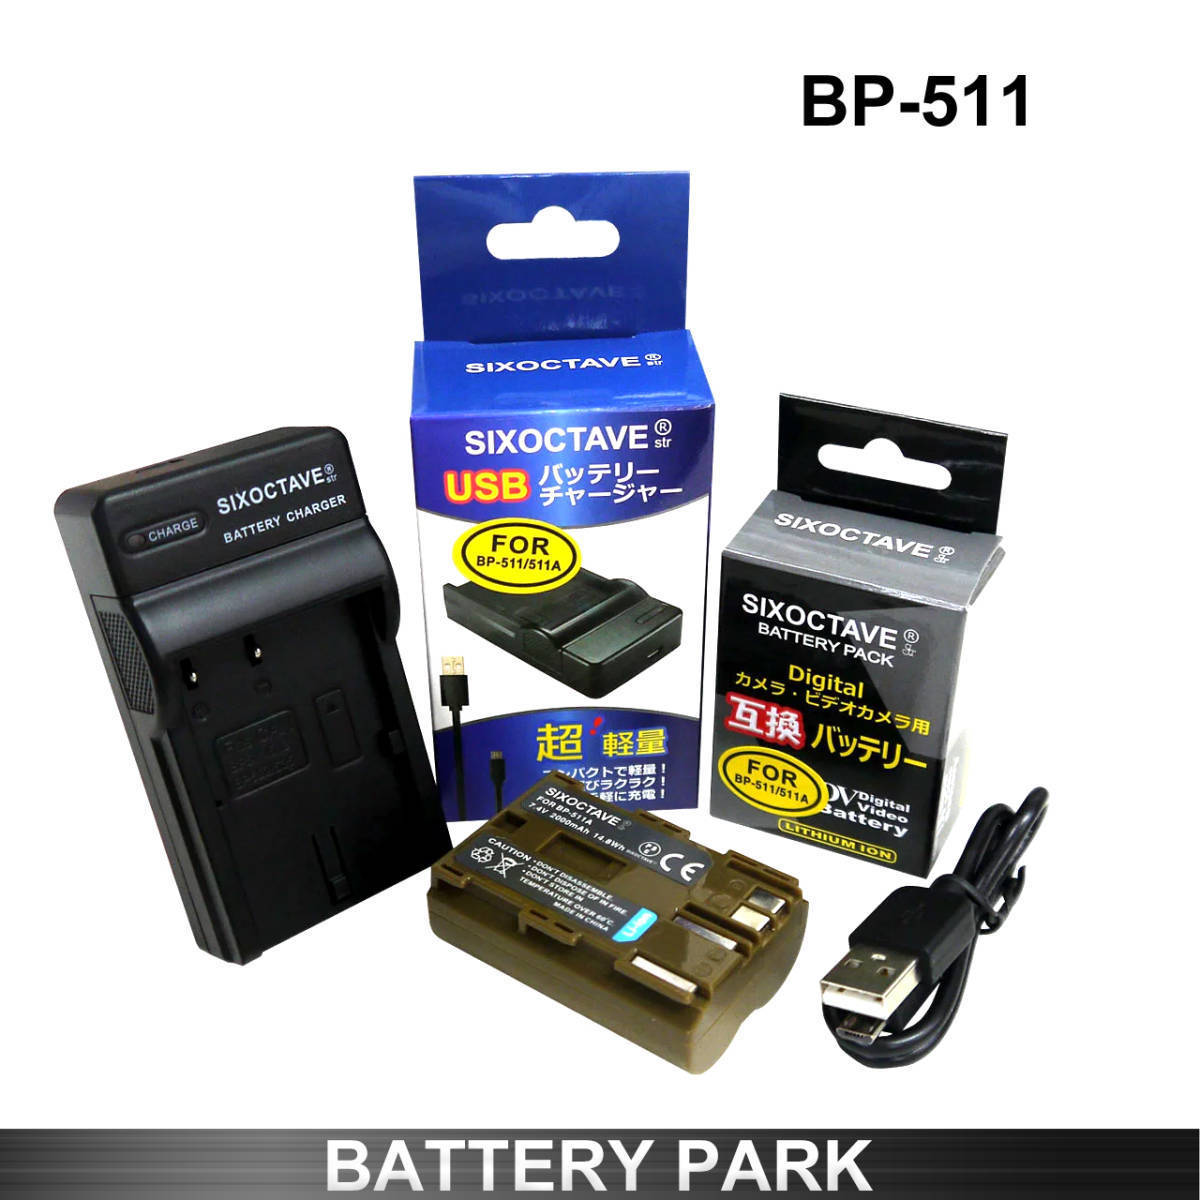 キャノン BP-508 / BP-511 / BP-511A / BP-512 / BP-514 互換バッテリーと互換充電器 EOS 50D EOS 40D EOS 30D EOS 20D EOS 300D_画像1